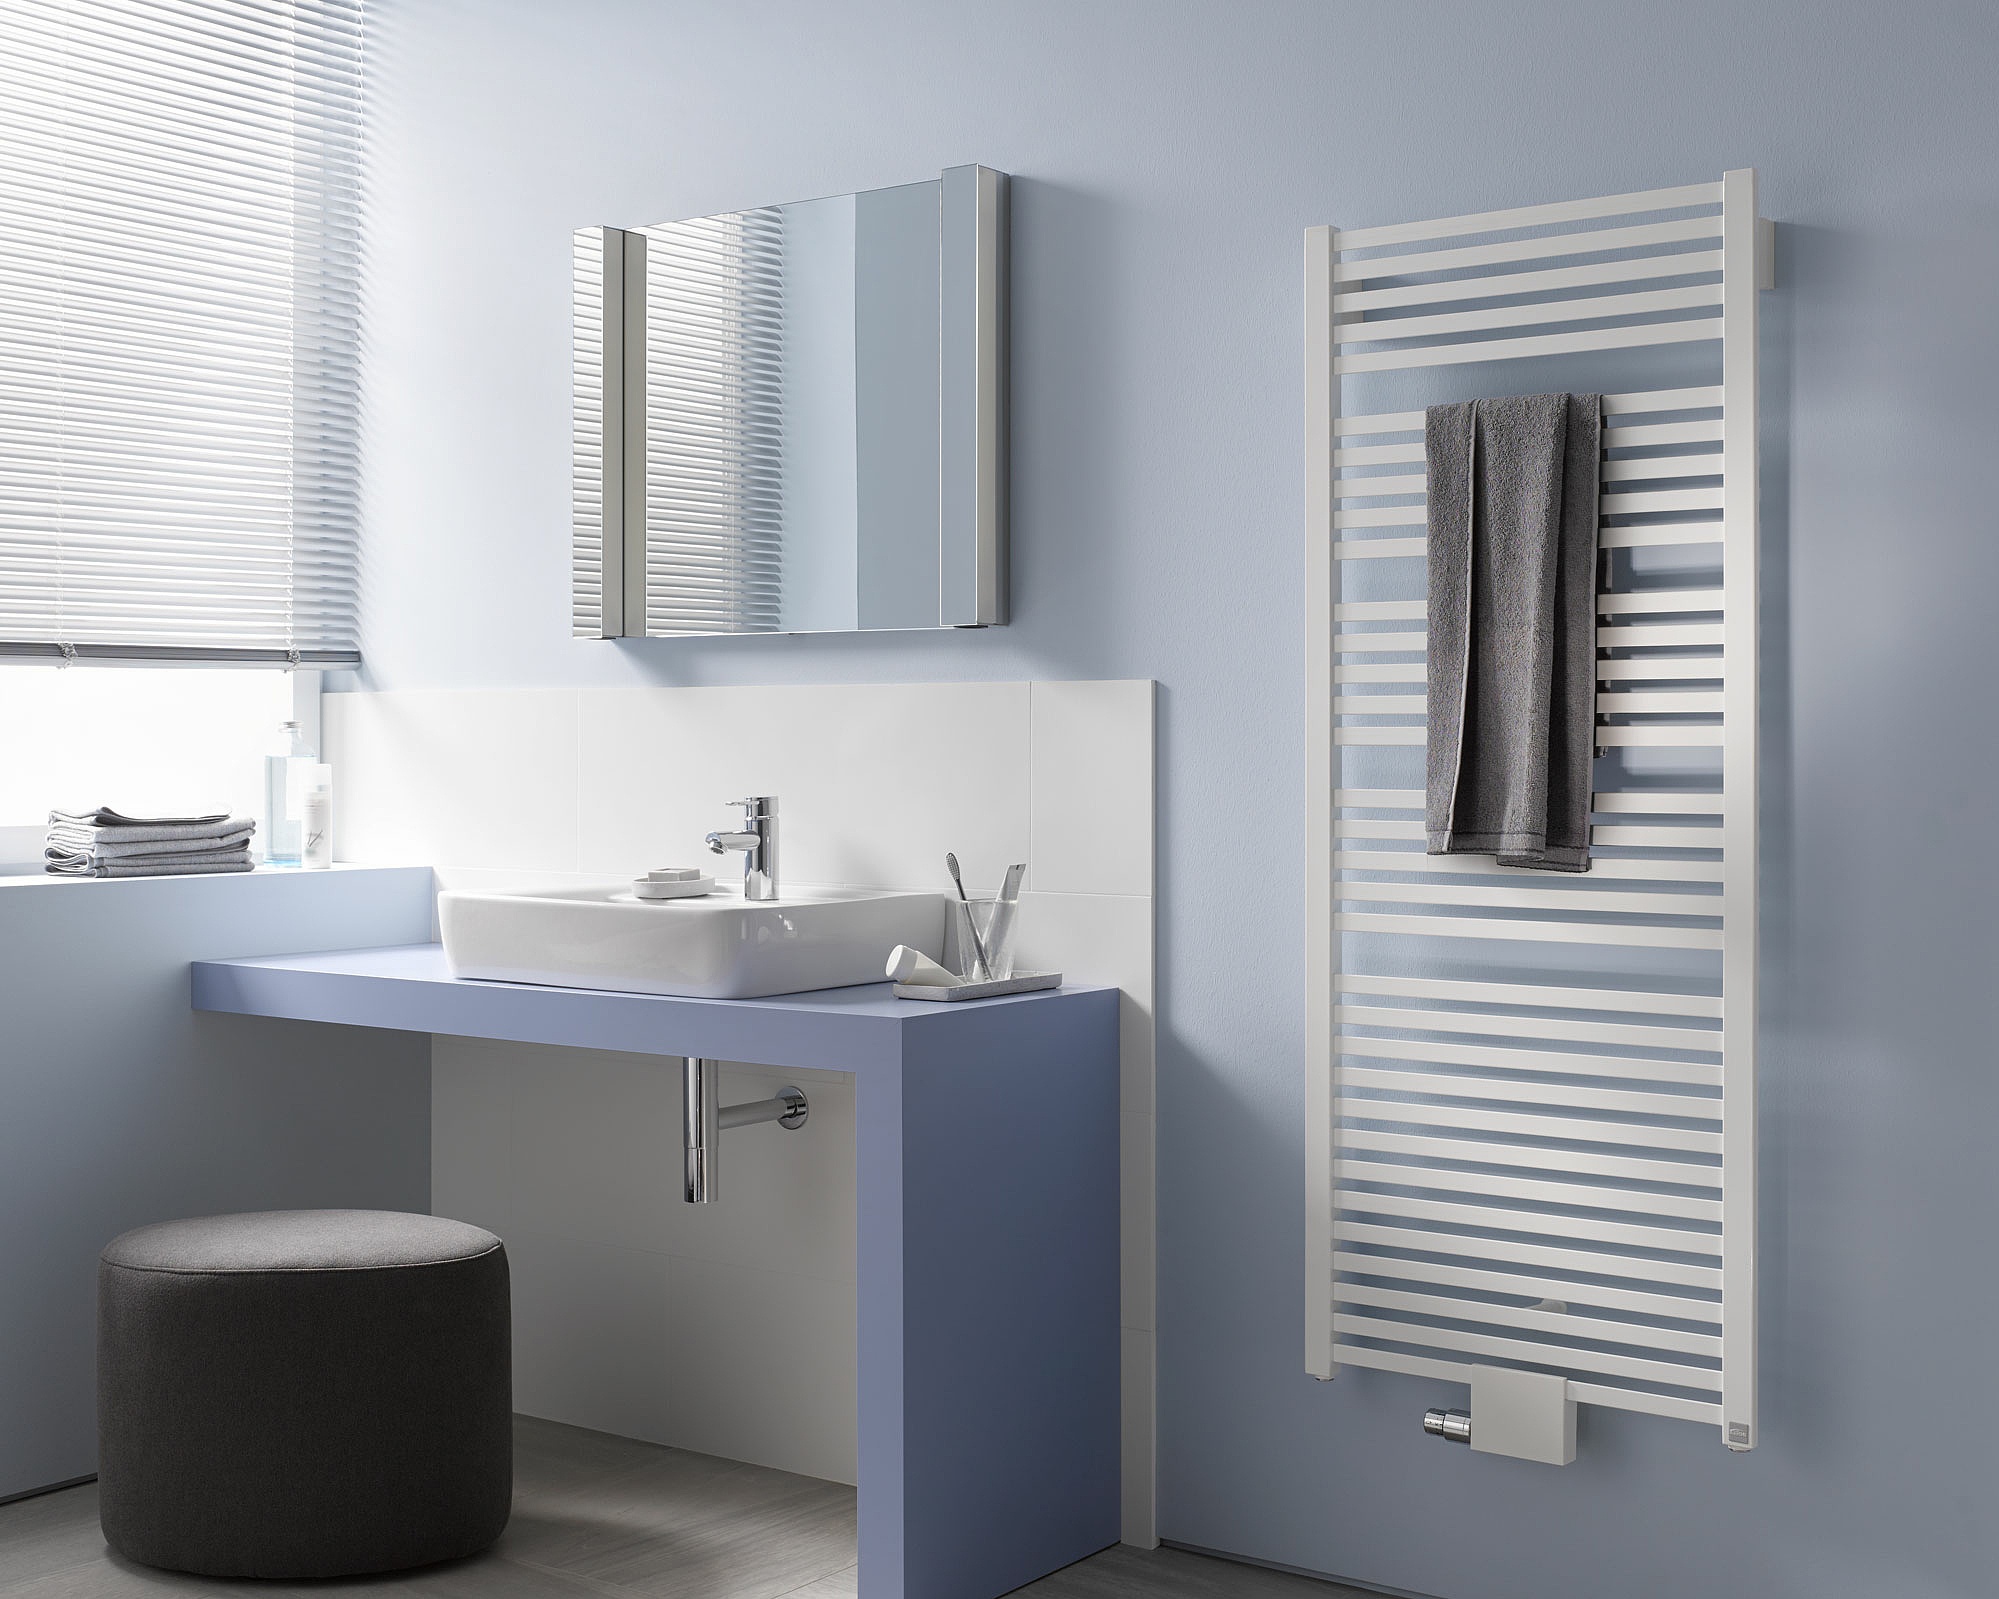 Le radiateur design et de salle de bain Geneo quadris de Kermi offre une grande flexibilité lors de la planification et de l’installation.